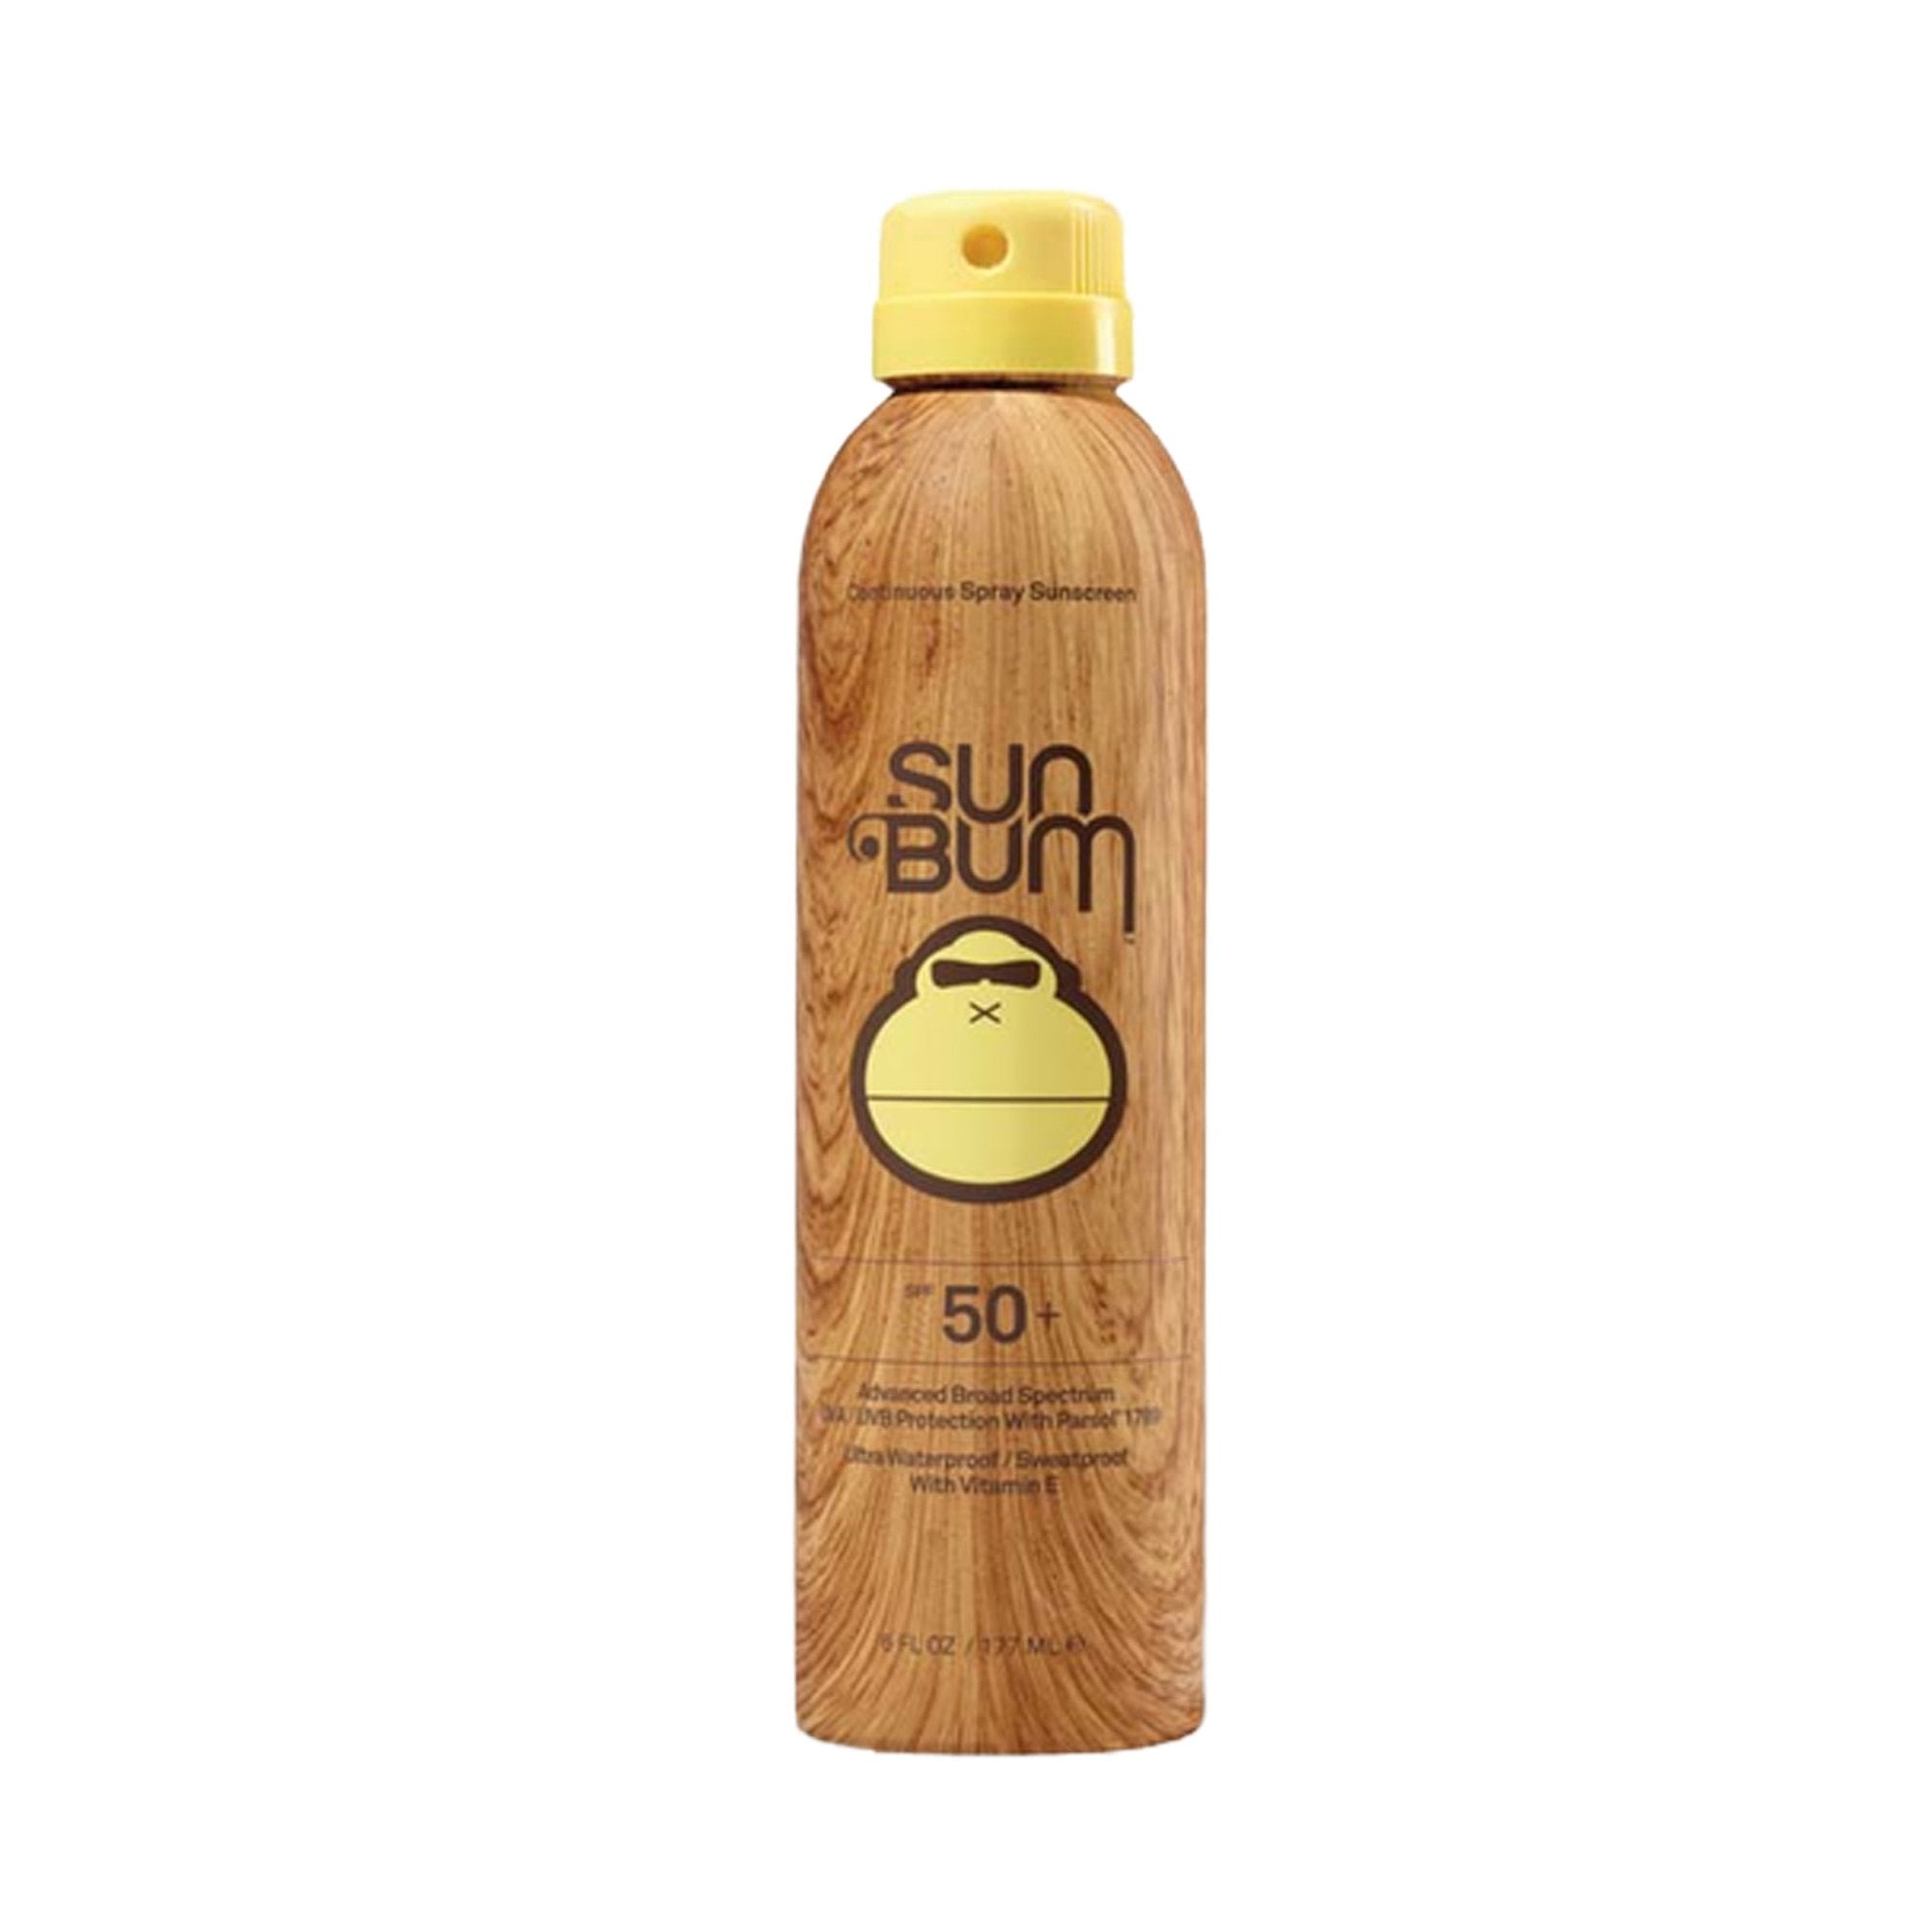 Sun Bum Continuous Spray SPF 50 Sunscreen